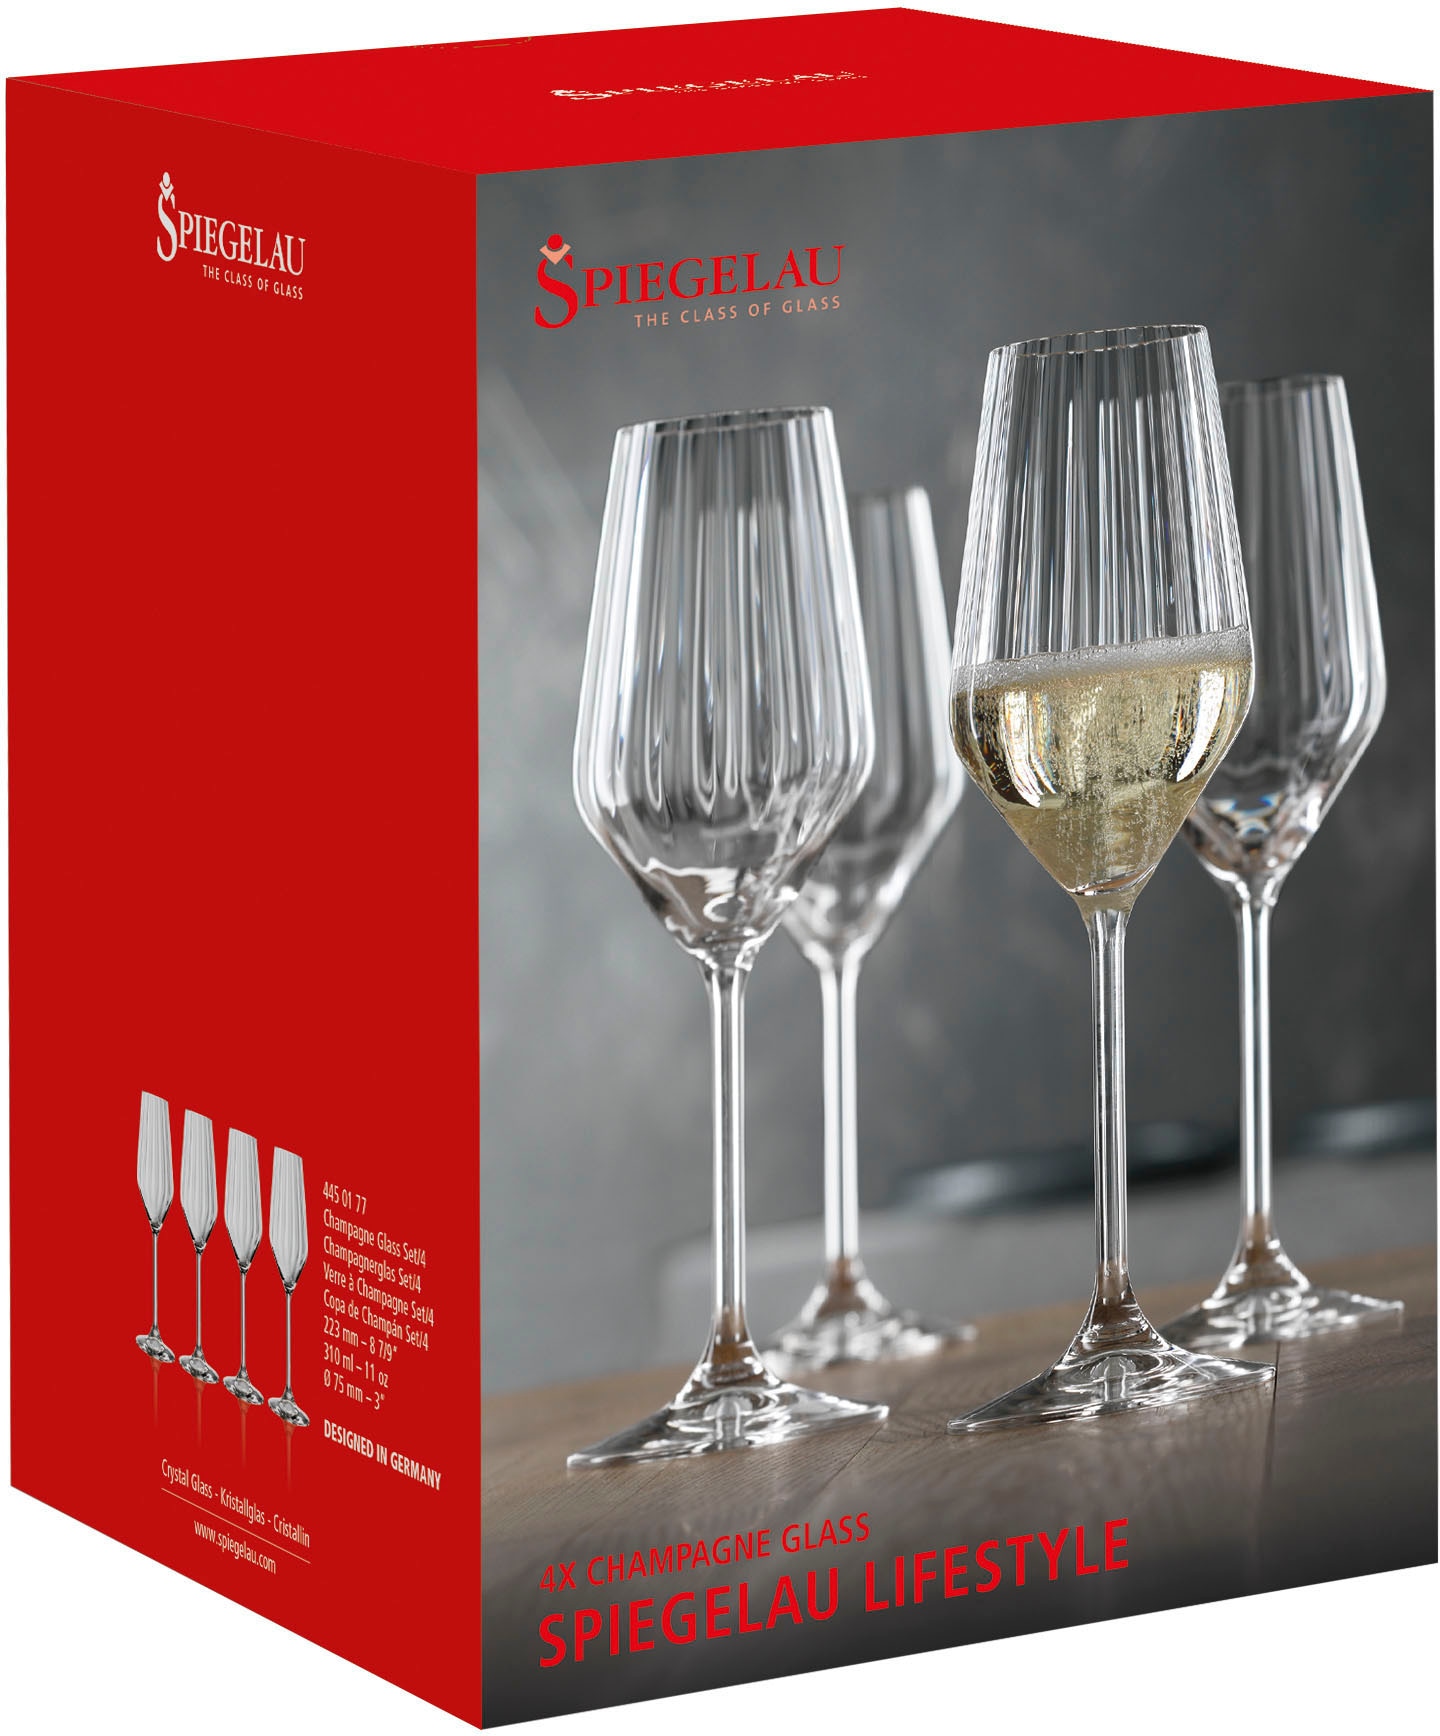 SPIEGELAU Champagnerglas »LifeStyle«, (Set, 4 tlg., Set bestehend aus 4 Gläsern), 310 ml, 4-teilig